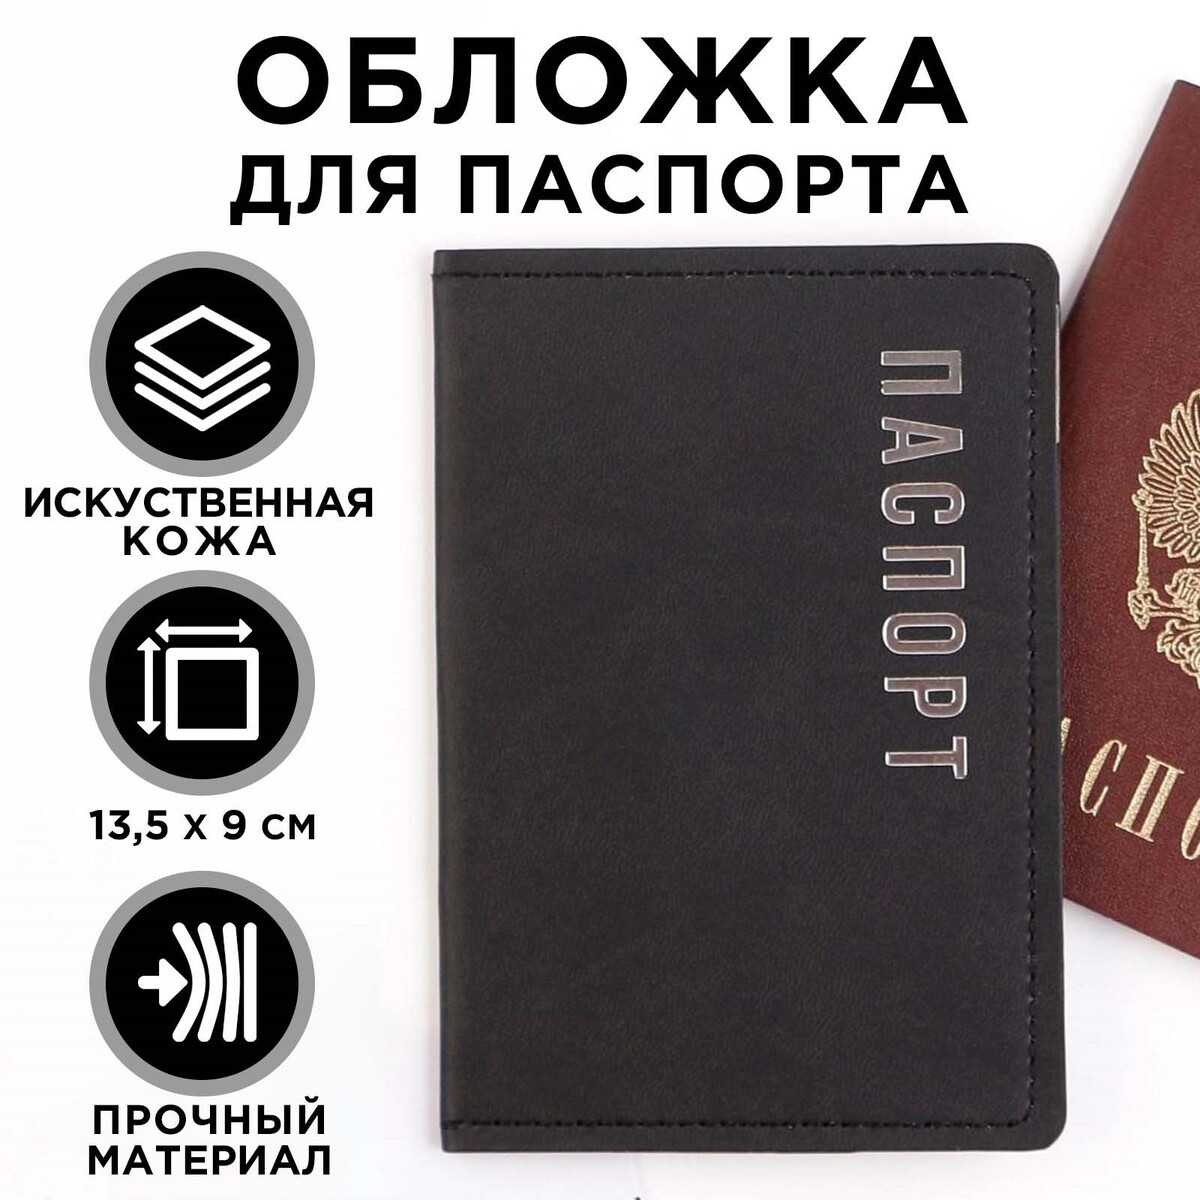 Как сшить обложку на паспорт из ткани?